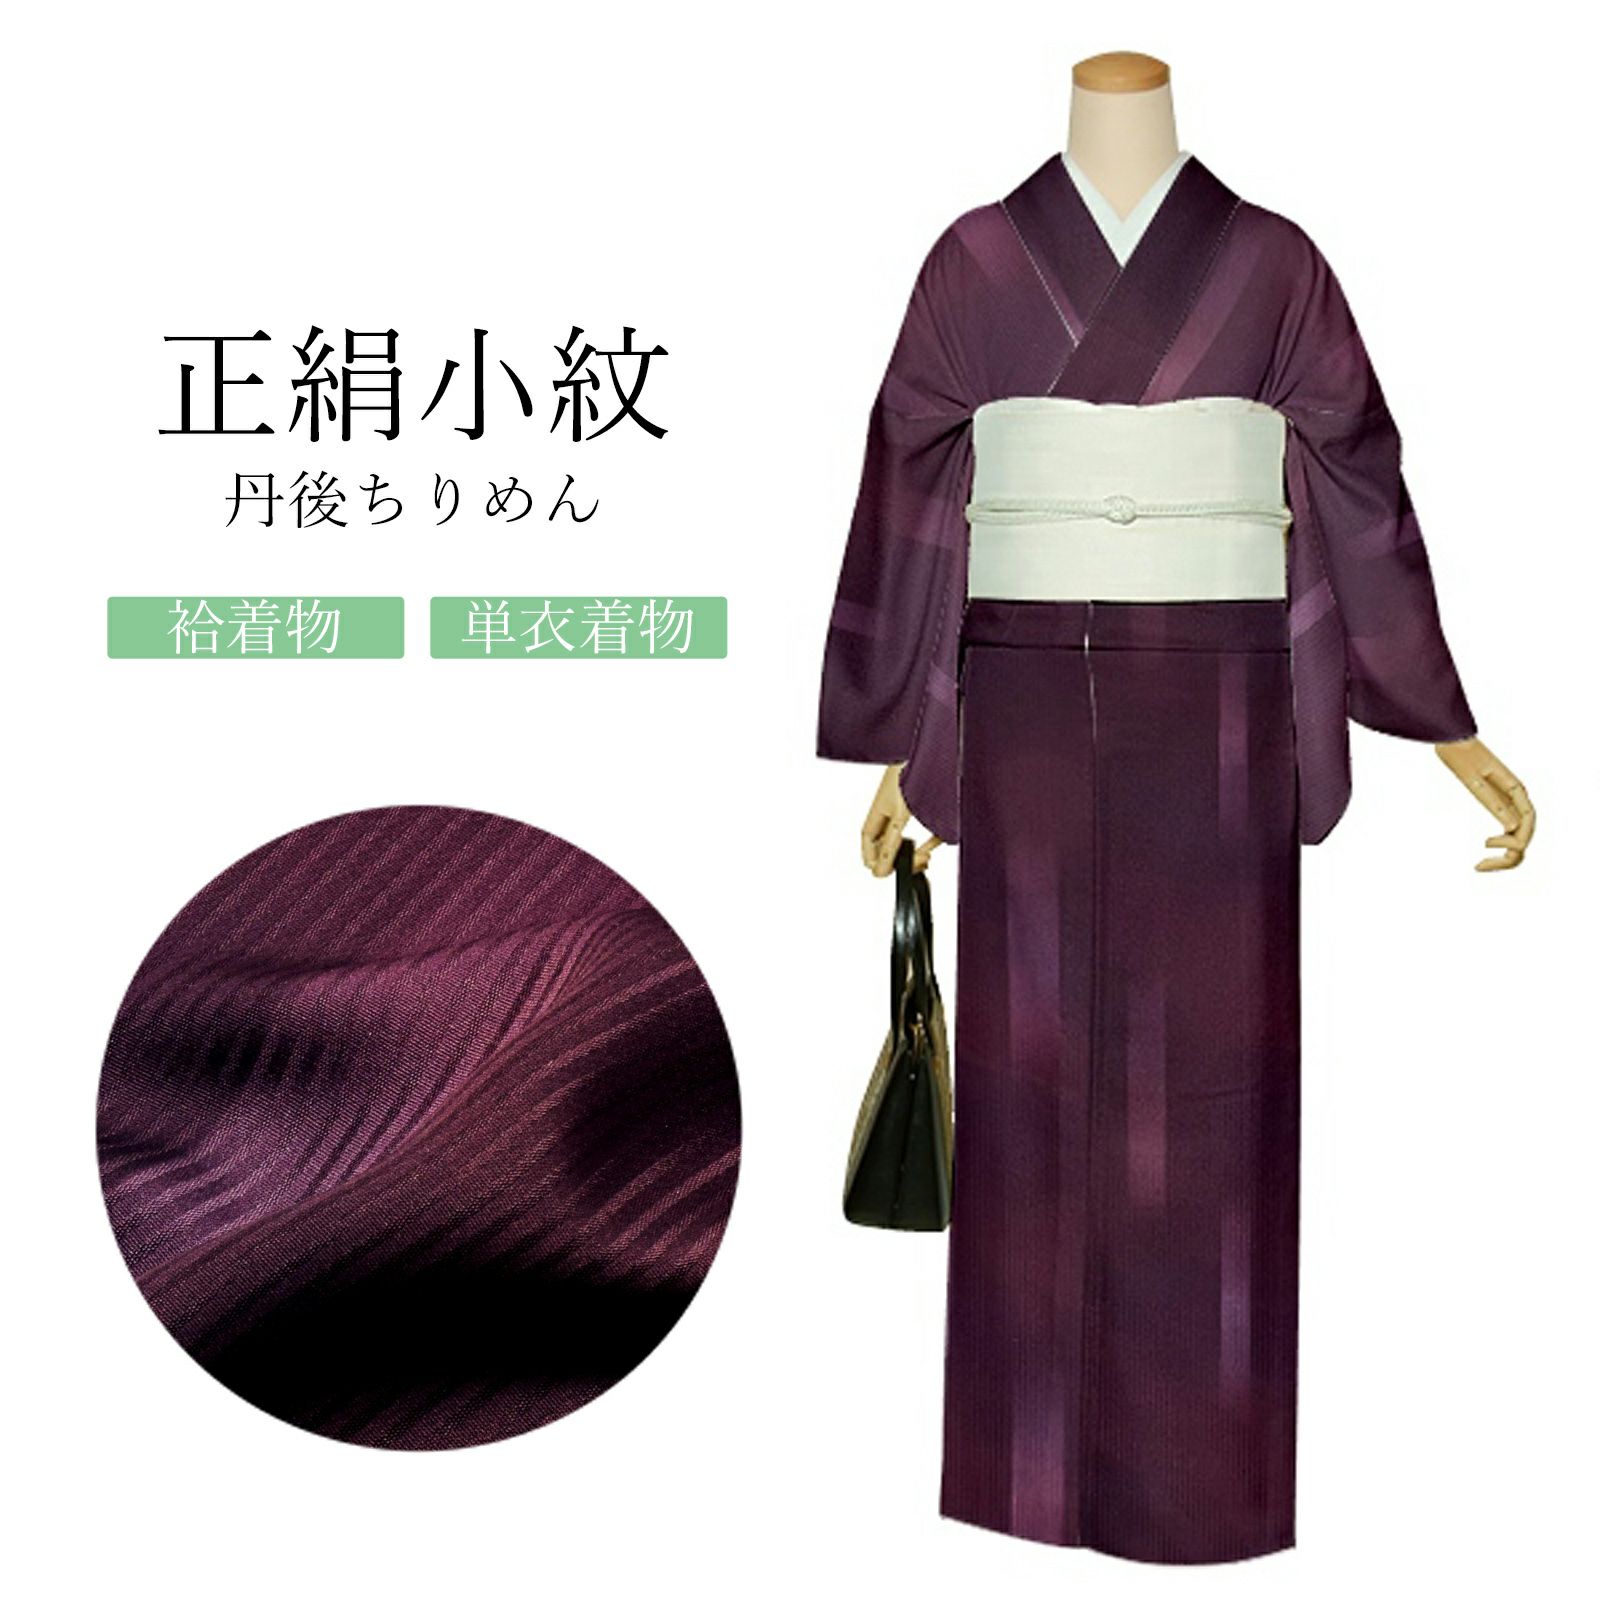 ギフト 【G12】着物 小紋 単衣 正絹 紫系ピンク 単品 小さいサイズ